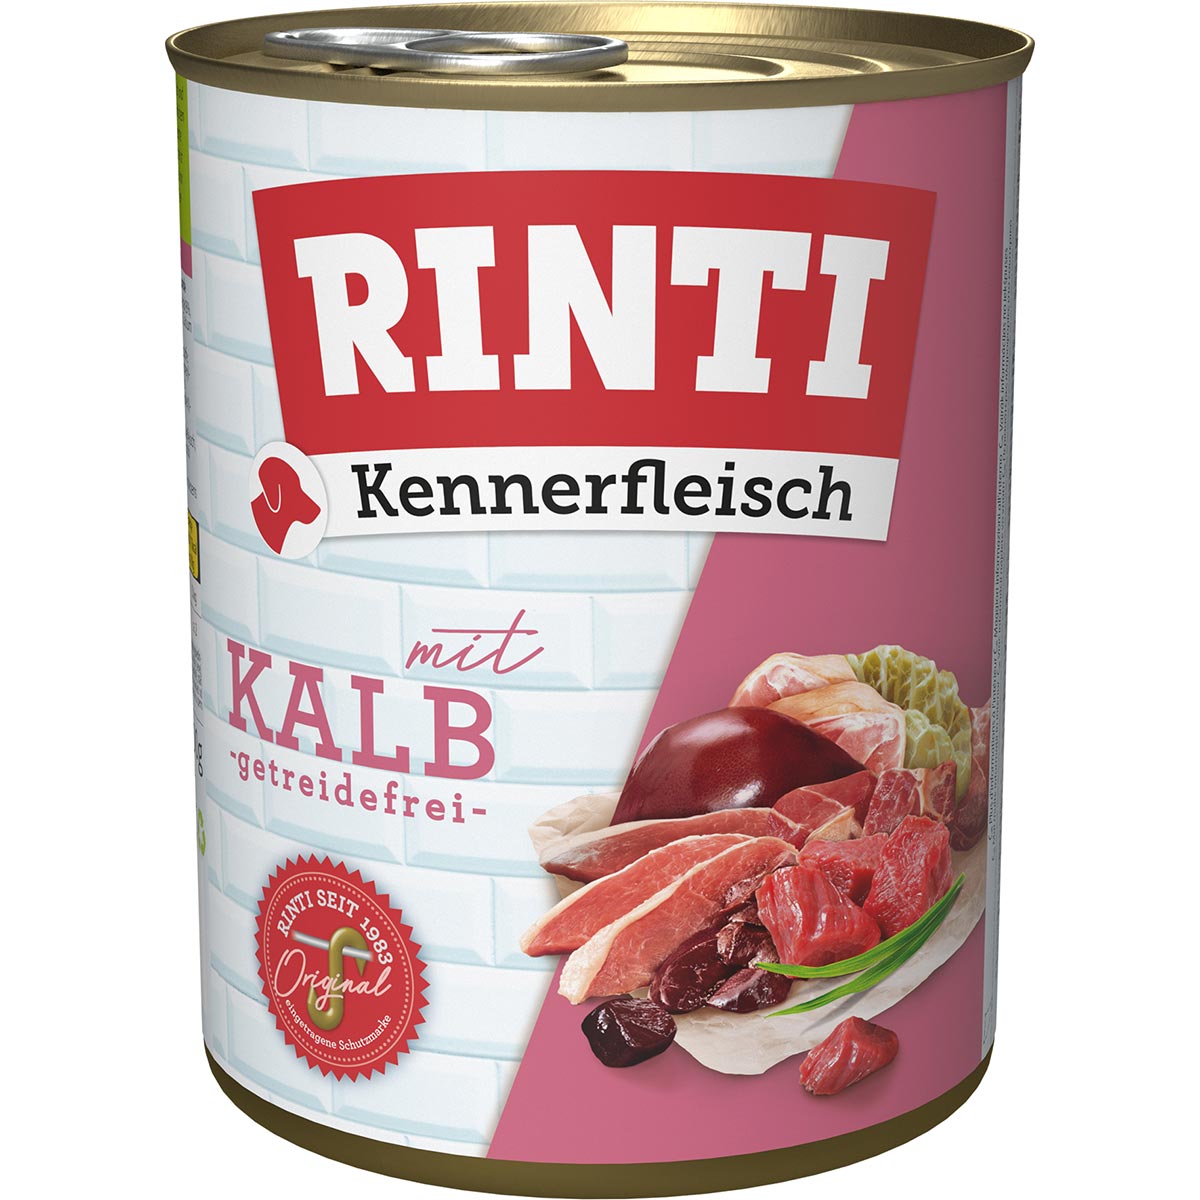 Rinti Kennerfleisch Kalb 24x800g von Rinti